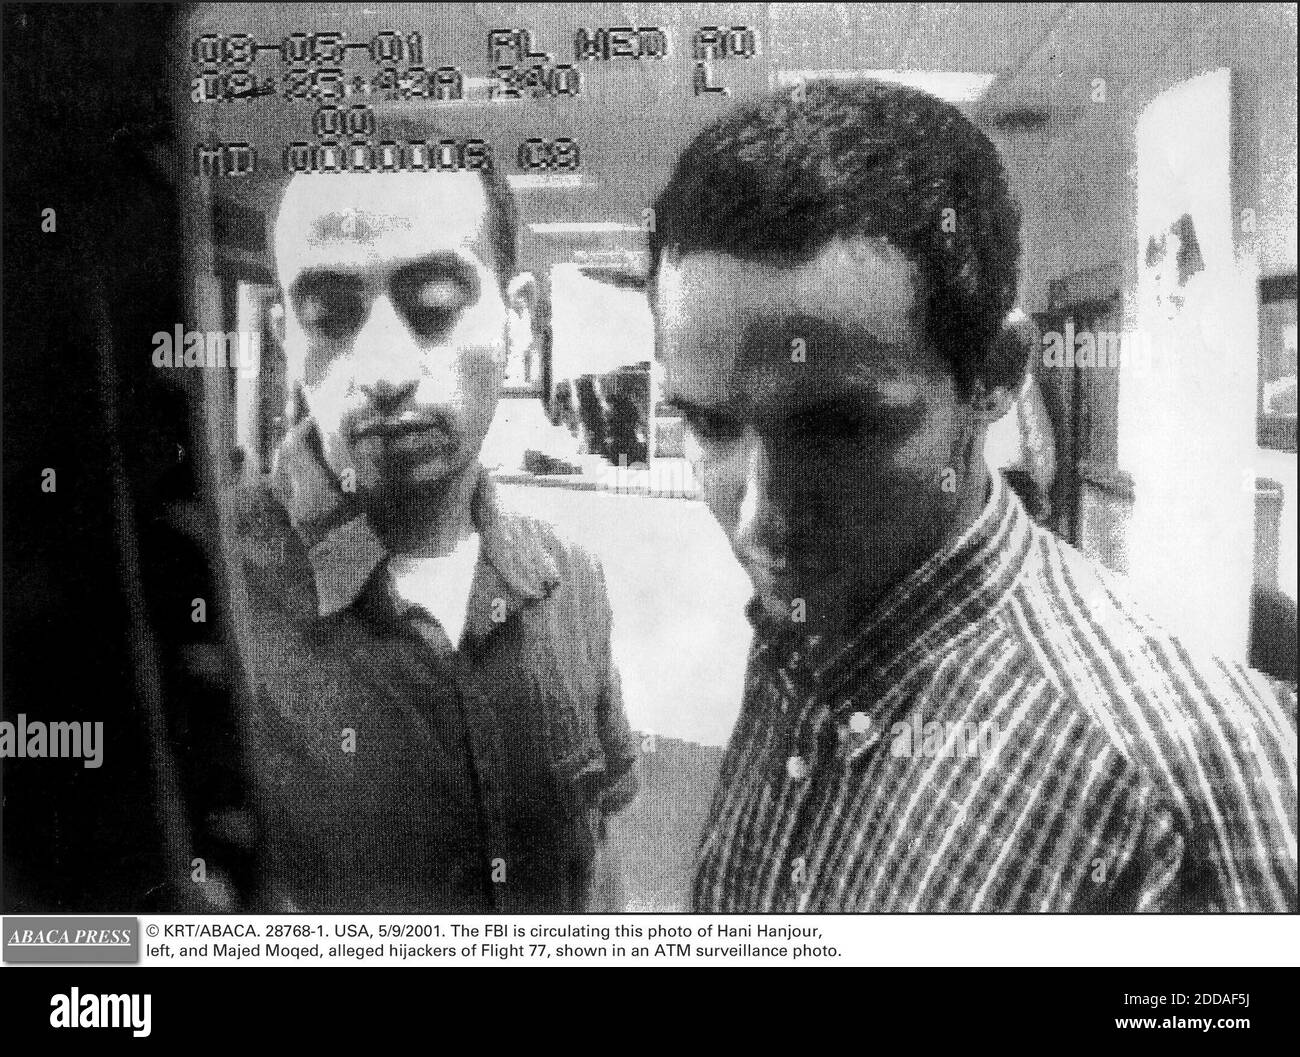 NO HAY CINE, NO HAY VIDEO, NO HAY TELEVISIÓN, NO HAY DOCUMENTAL - © KRT/ABACA. 28768-1. EE.UU., 5/9/2001. El FBI está circulando esta foto de Hani Hanjour, a la izquierda, y Majed Moqed, presuntos secuestradores del vuelo 77, que se muestra en una foto de vigilancia ATM. Foto de stock